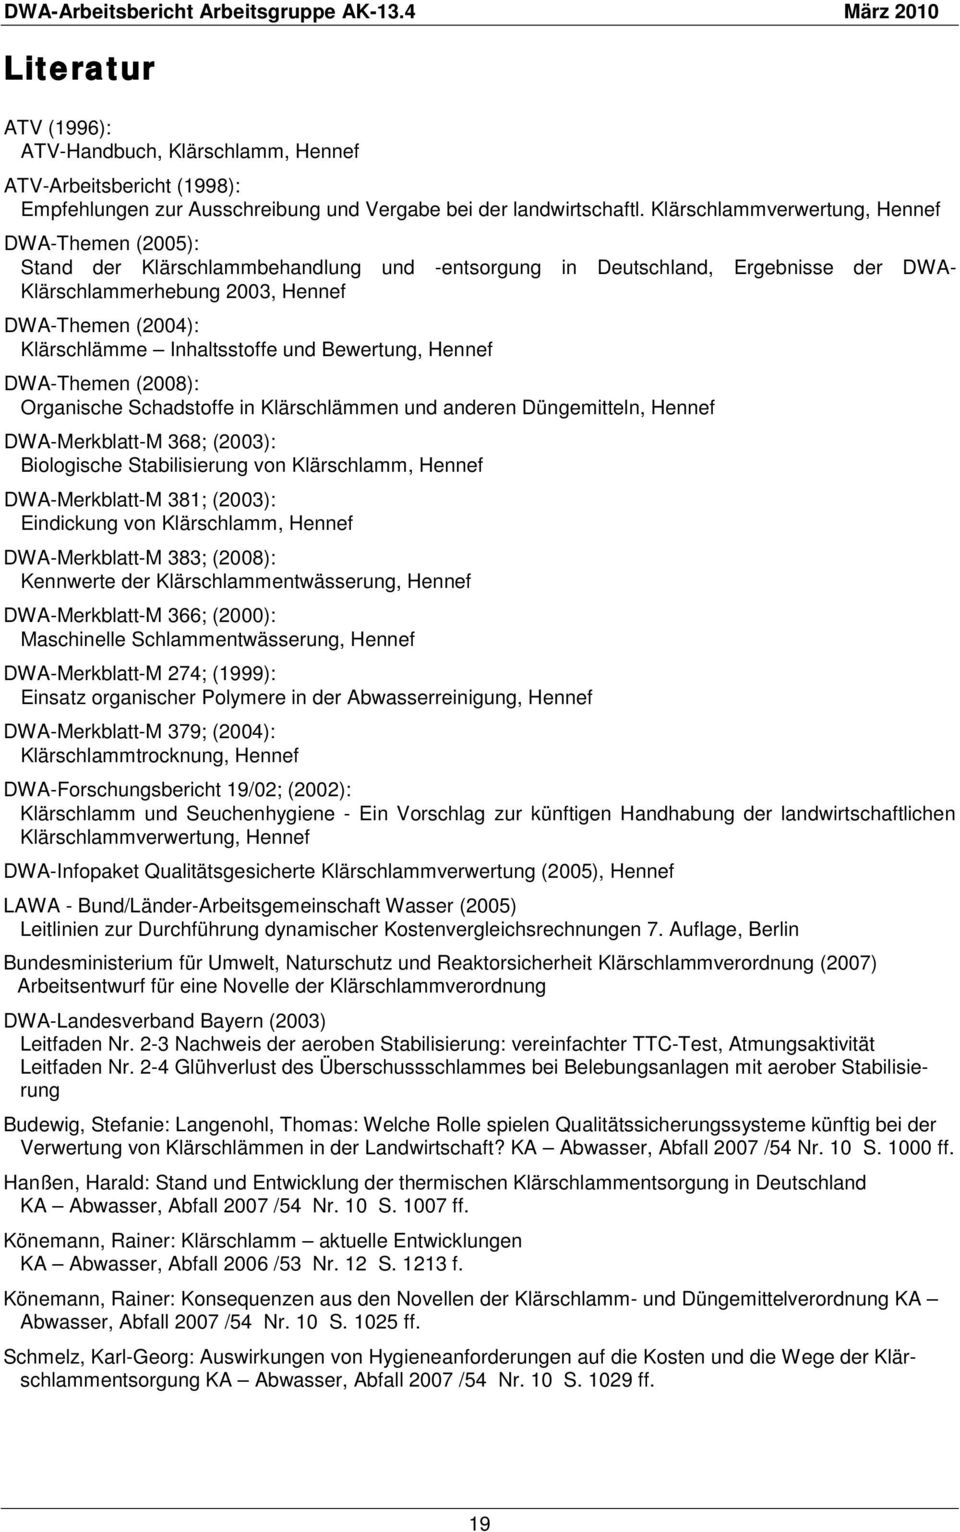 Inhaltsstoffe und Bewertung, Hennef DWA-Themen (2008): Organische Schadstoffe in Klärschlämmen und anderen Düngemitteln, Hennef DWA-Merkblatt-M 368; (2003): Biologische Stabilisierung von